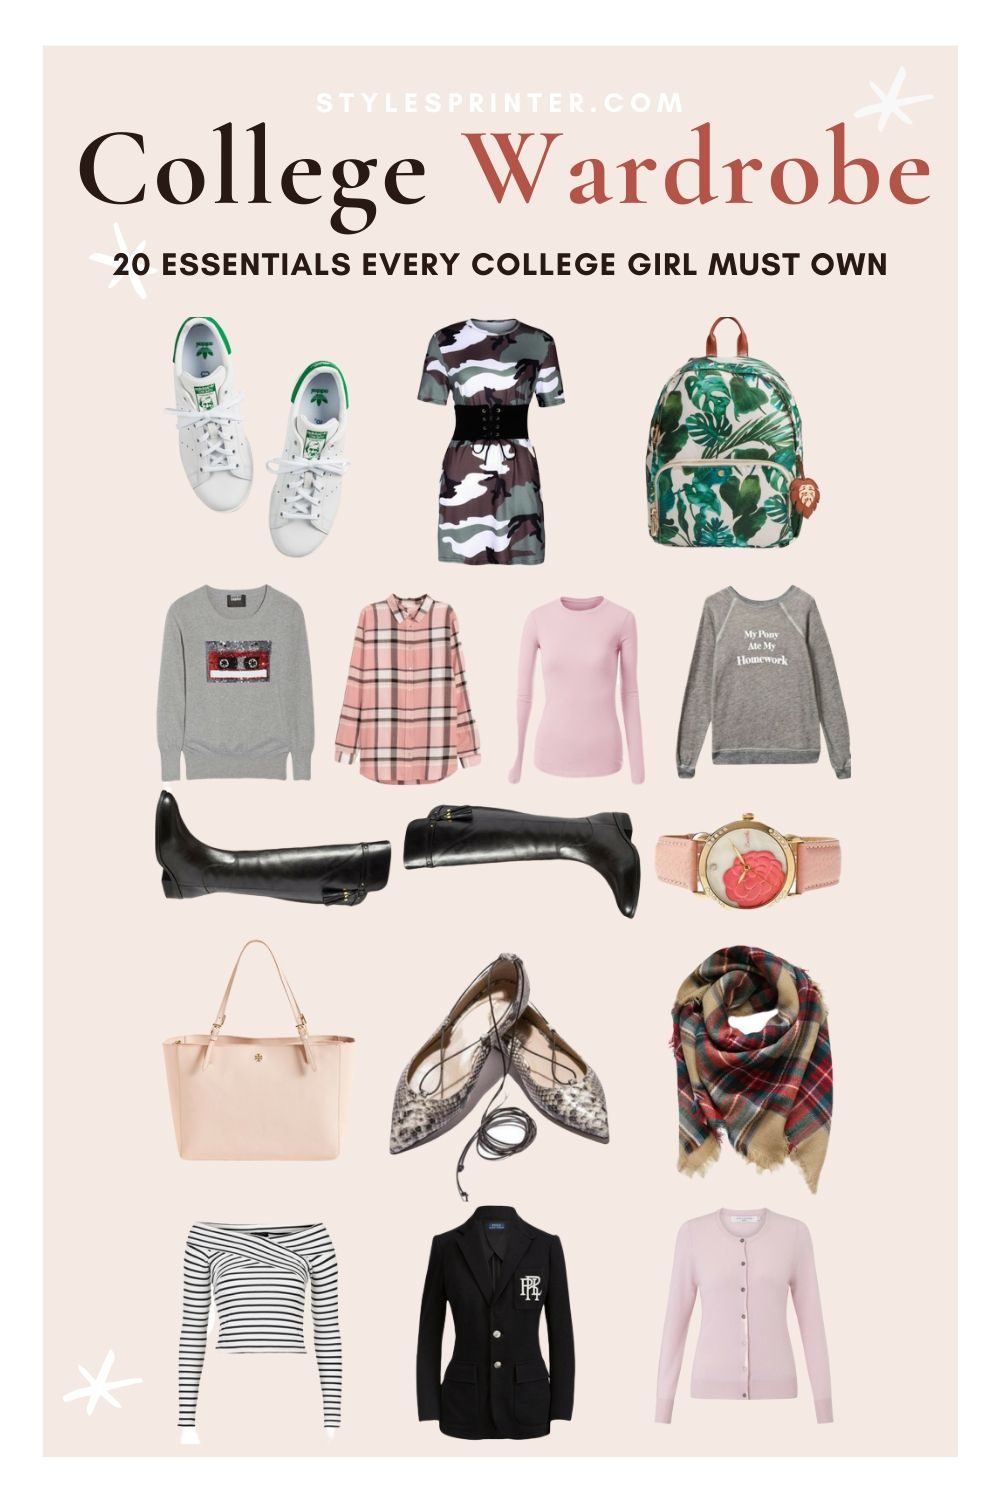 College Wardrobe  20 Wardrobe Essentials Every College Girl Must Own